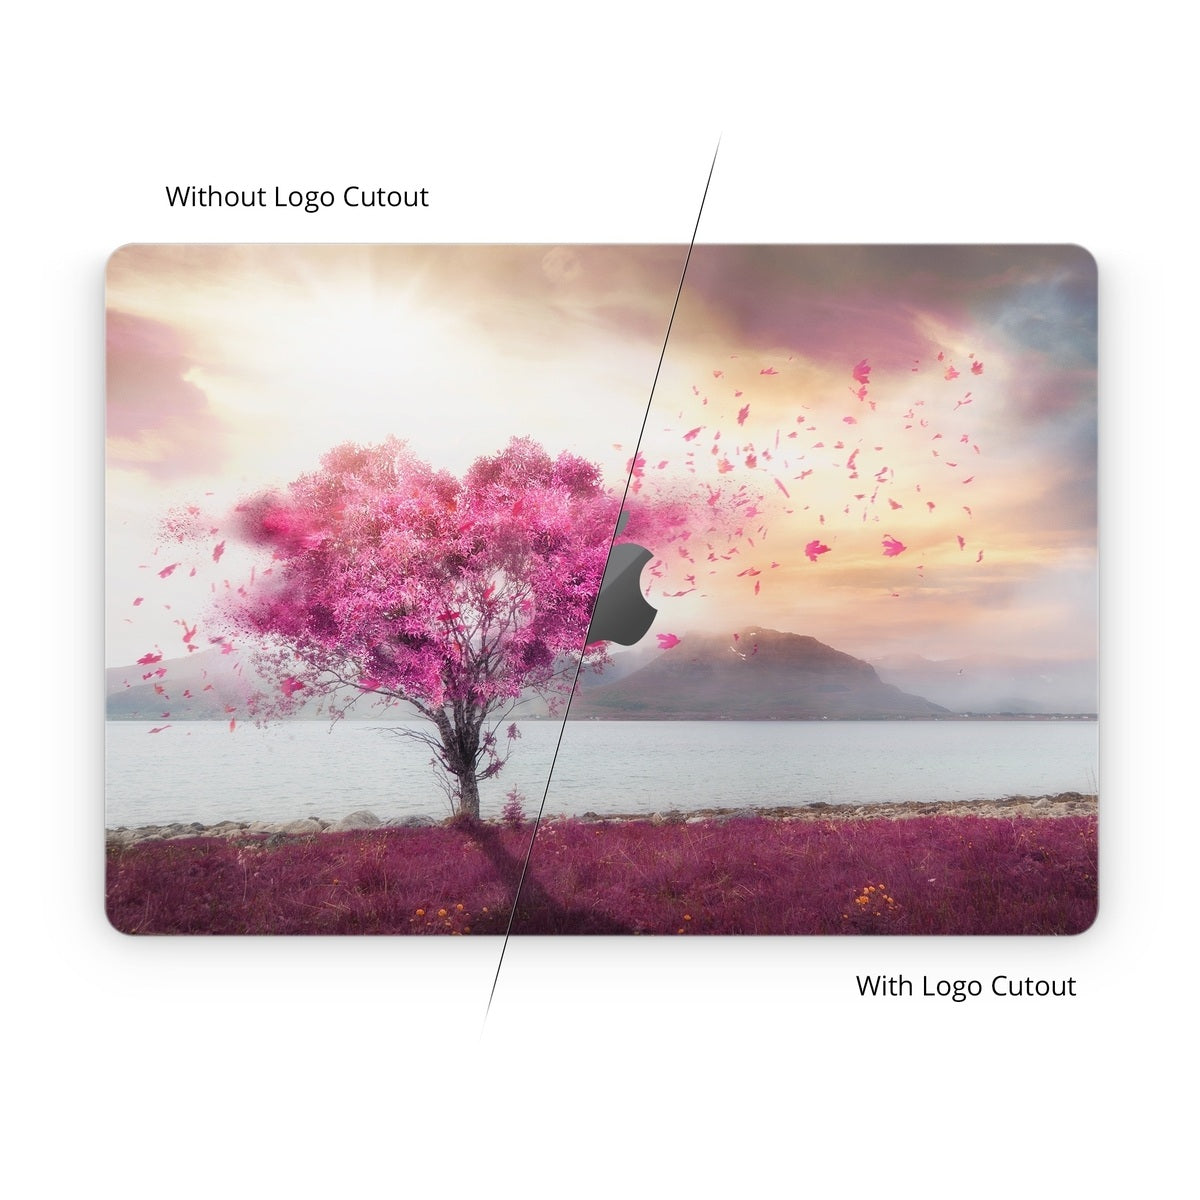 Love Tree - Apple MacBook Skin